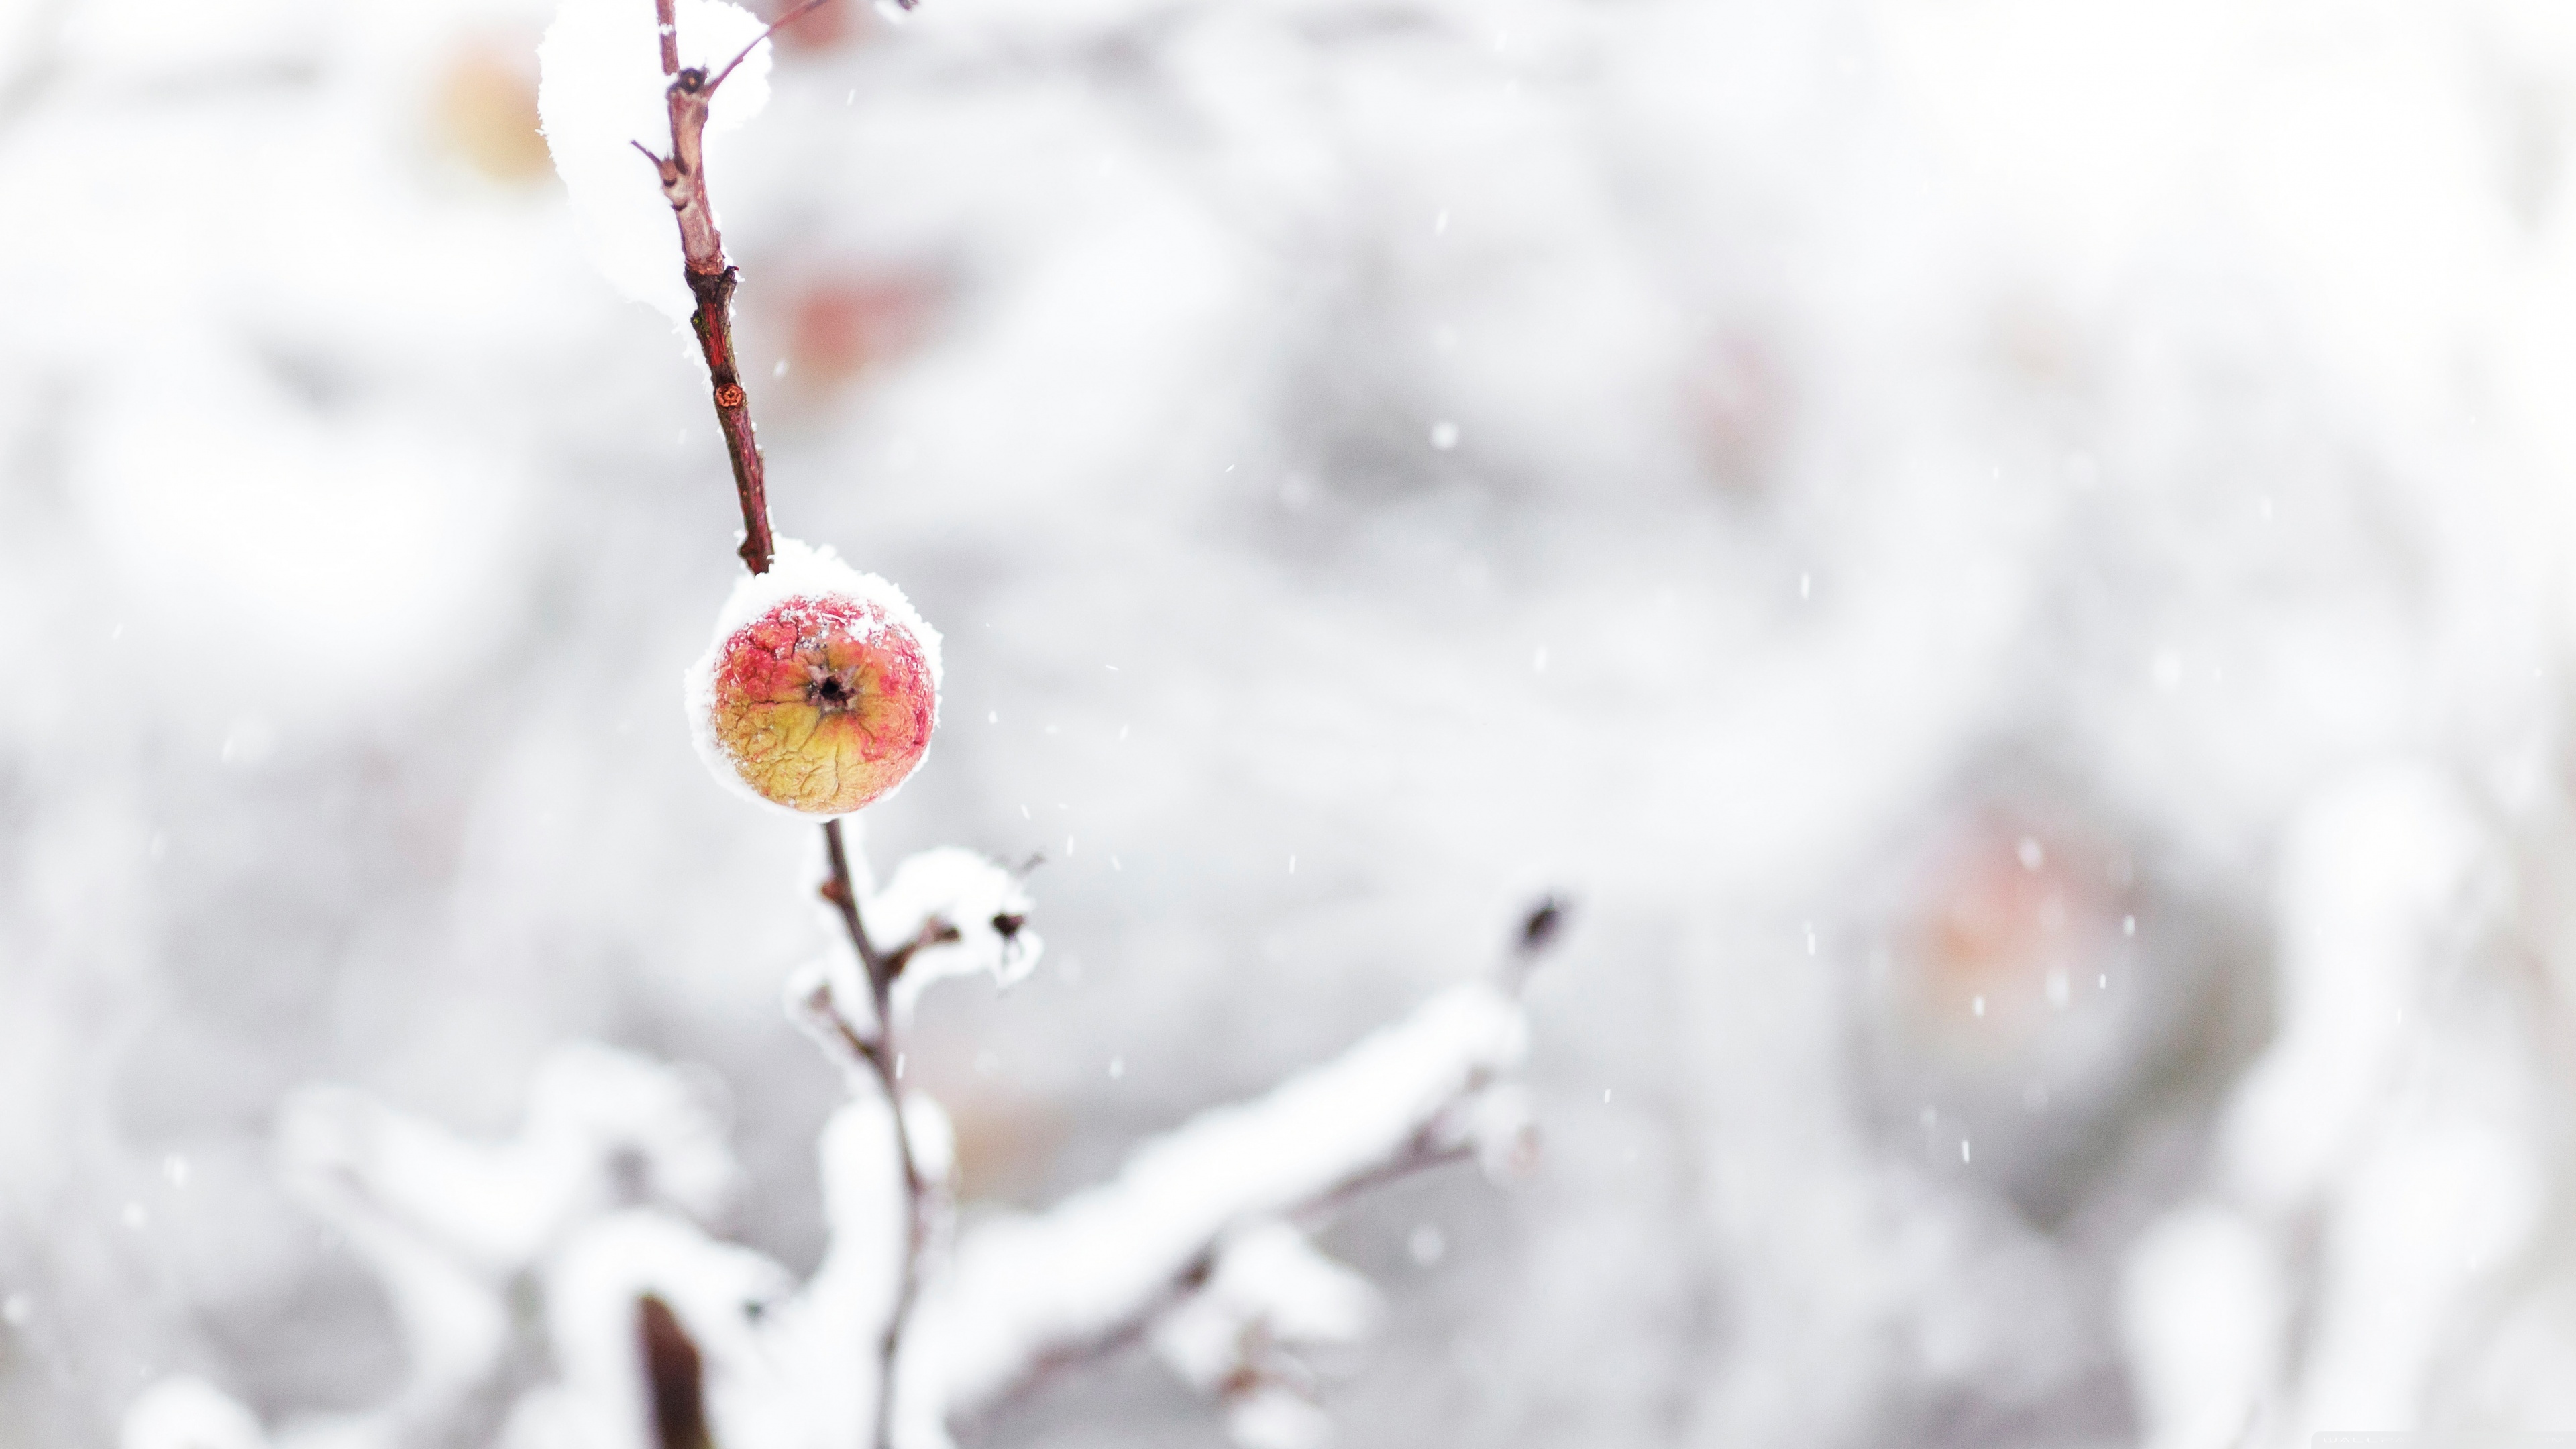 Frozen Apple, Winter Ultra HD Desktop Background Wallpaper for 4K